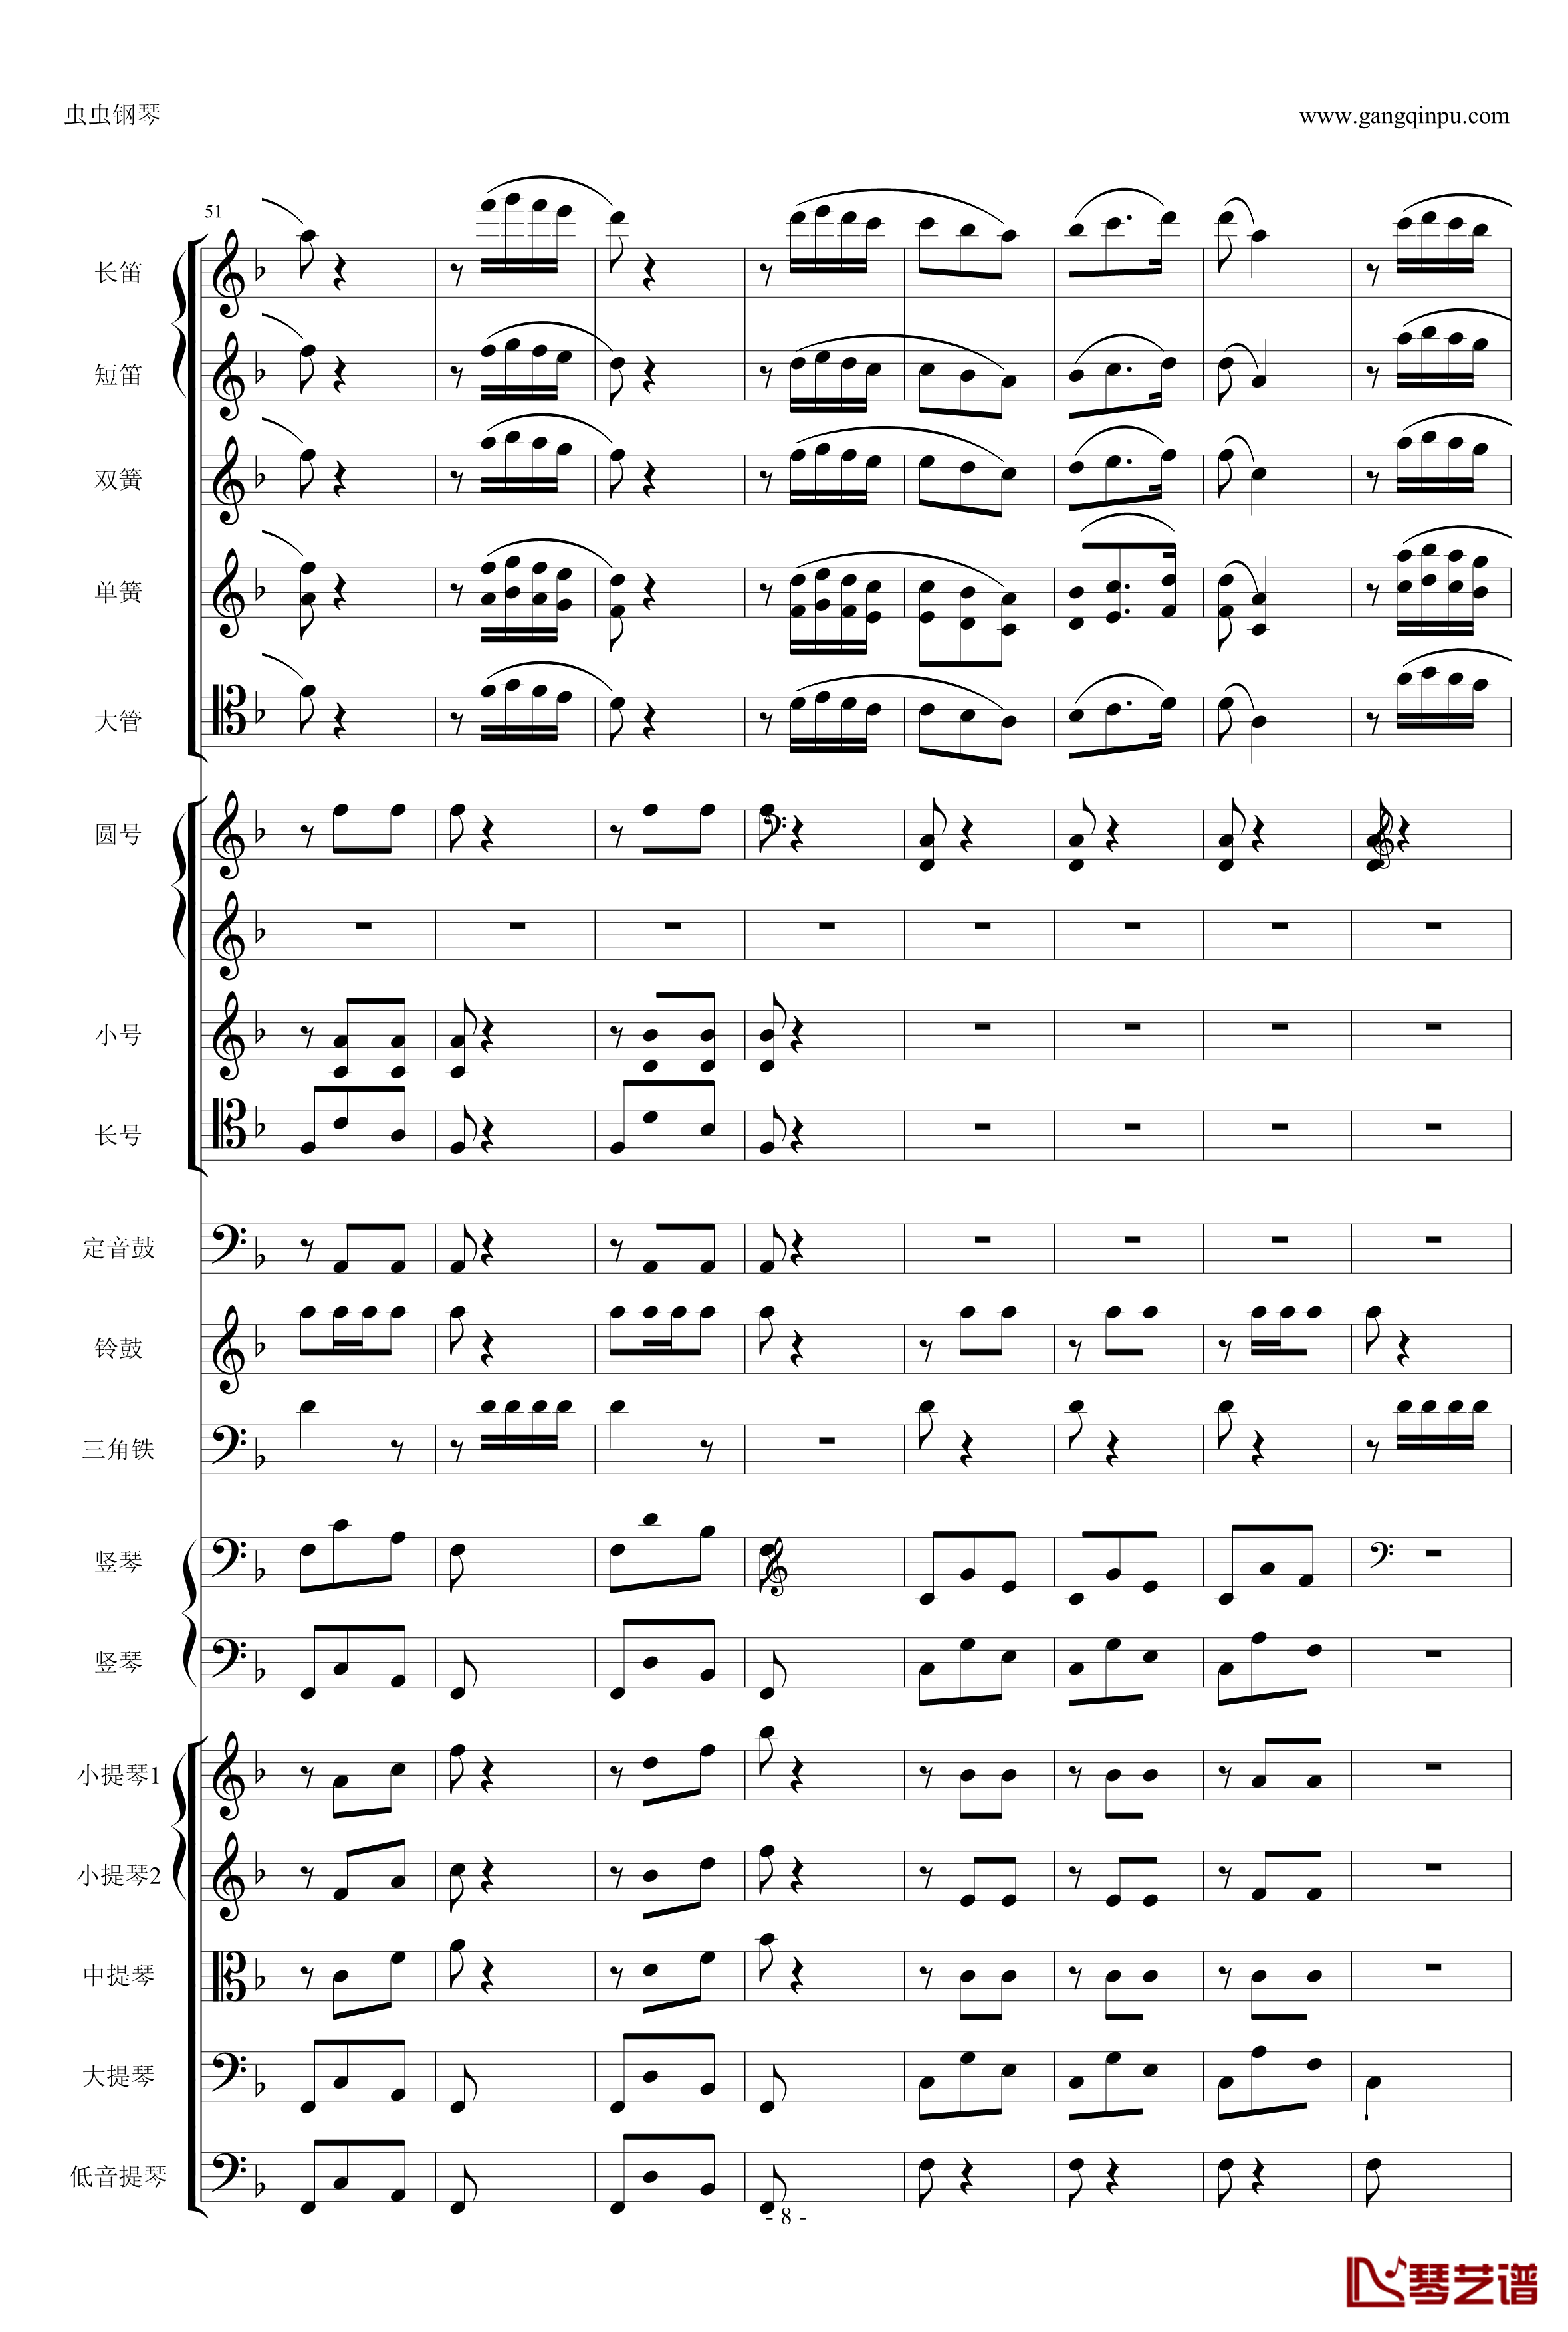 歌剧卡门选段钢琴谱-比才-Bizet- 第四幕间奏曲8